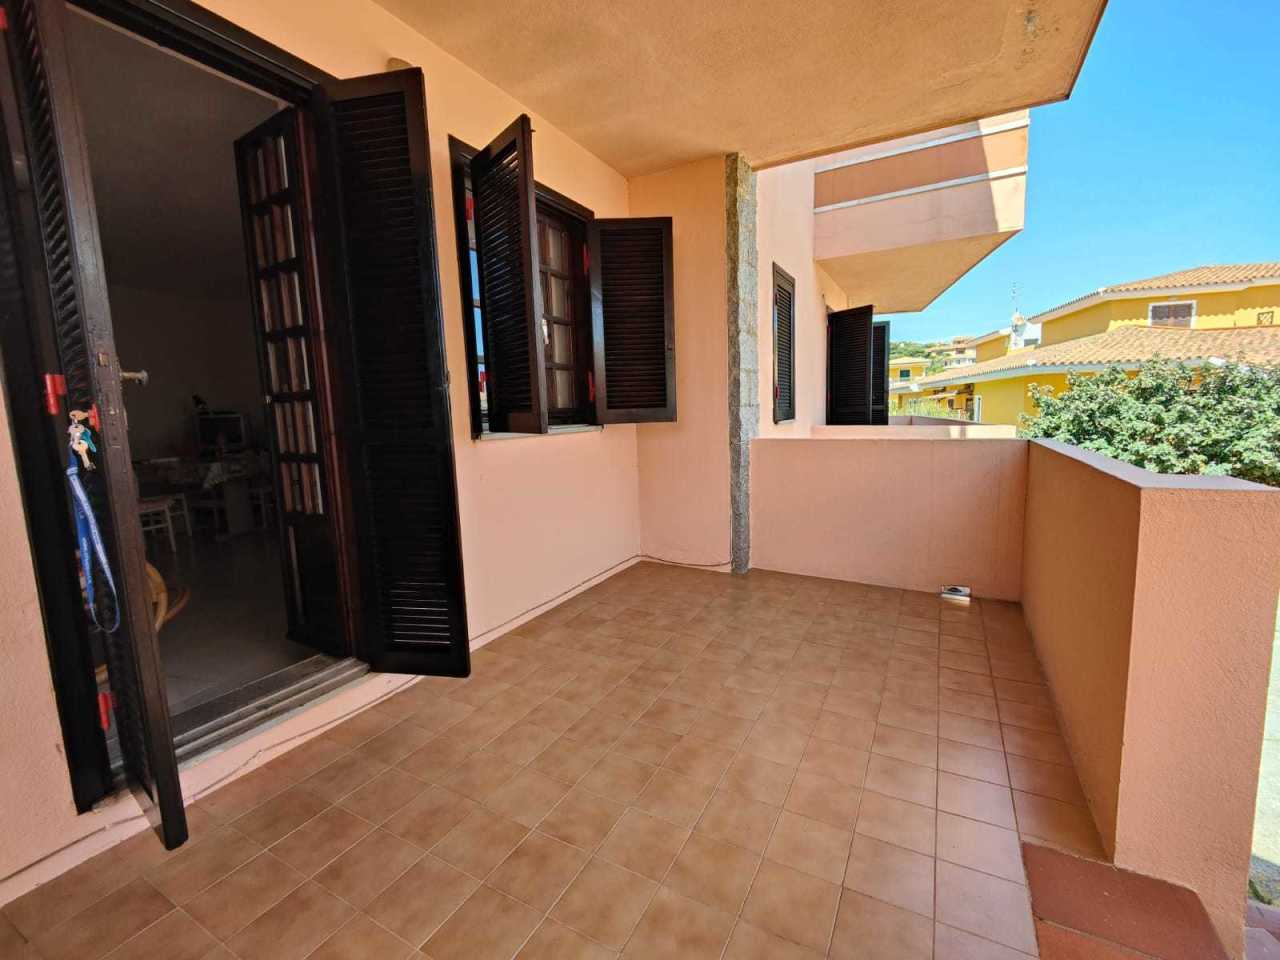 Appartamento in vendita a Santa Teresa Gallura, 4 locali, prezzo € 149.000 | PortaleAgenzieImmobiliari.it